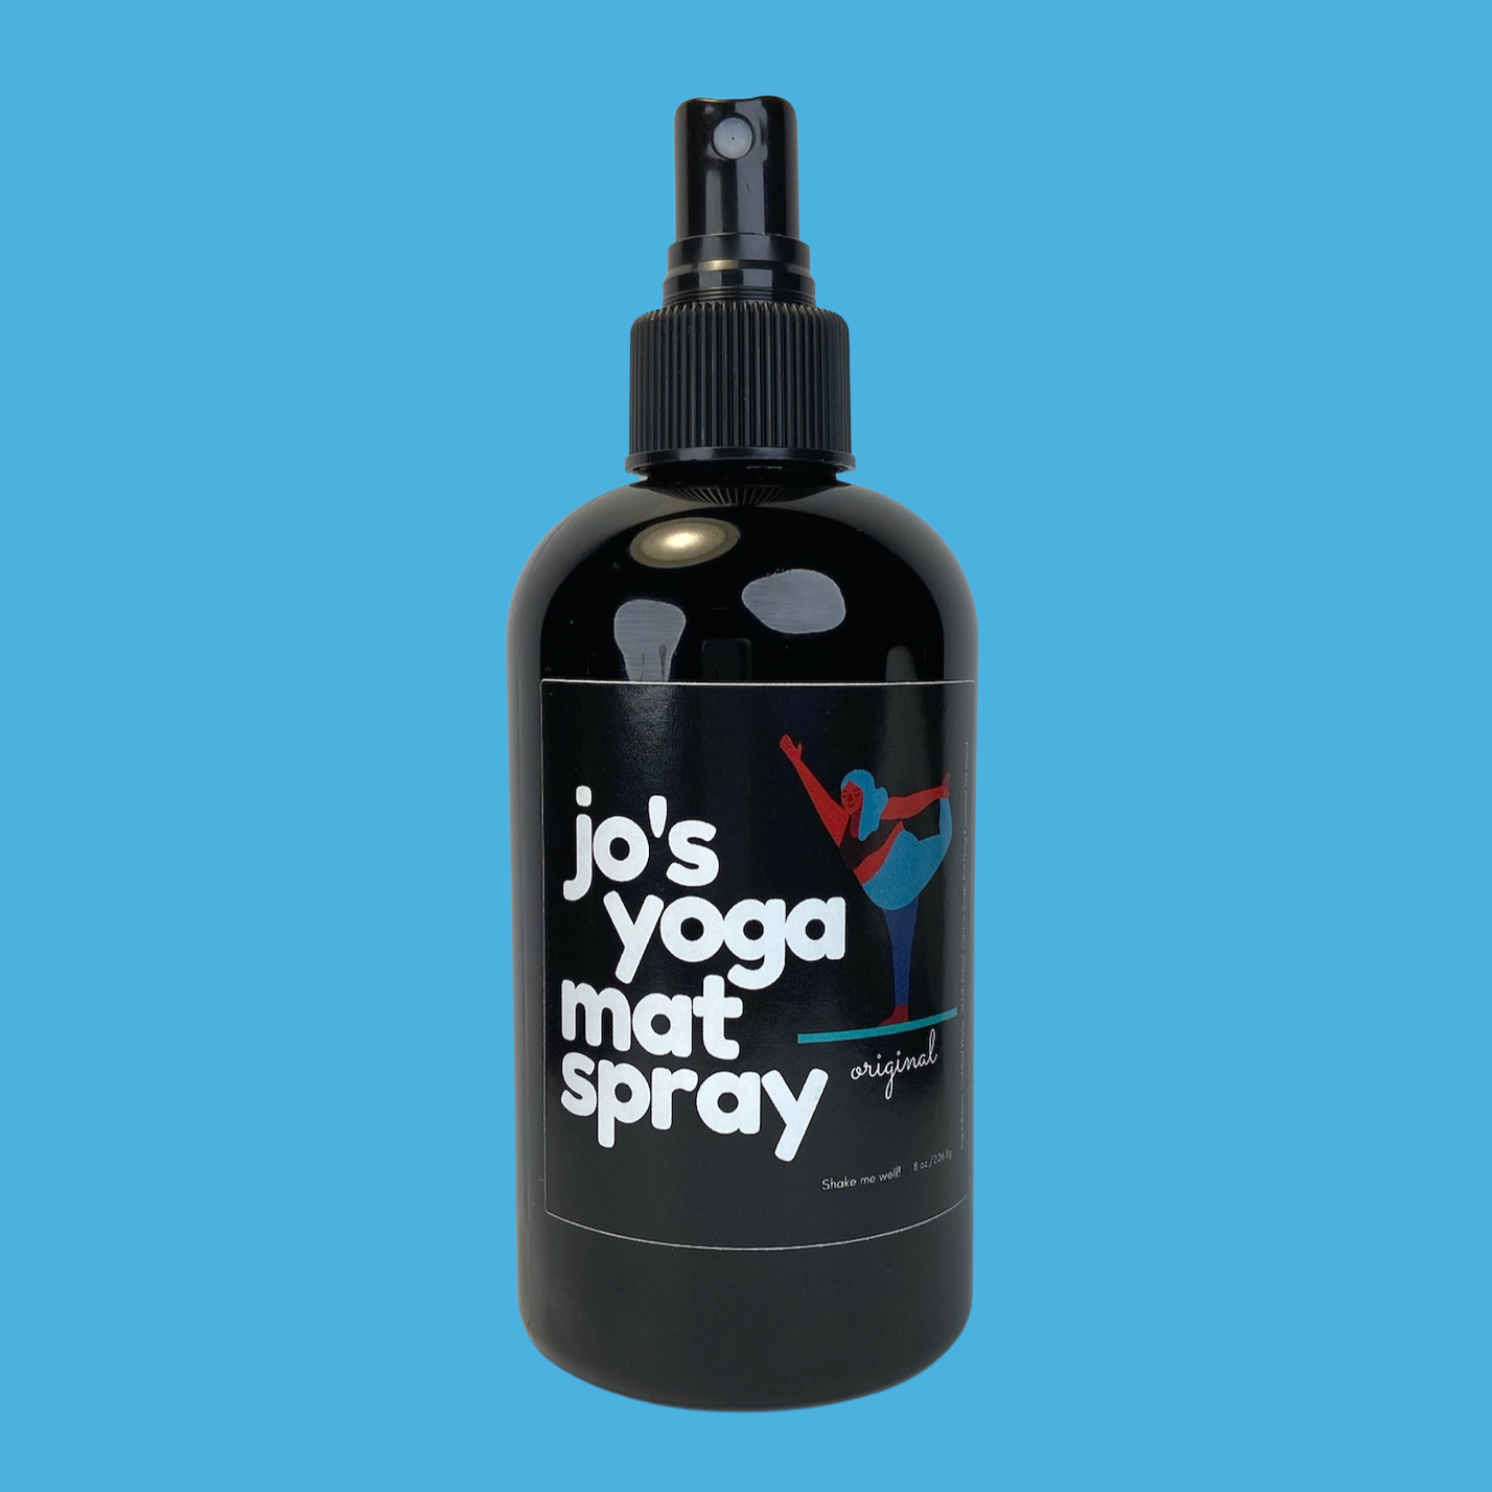 bookofjoe: Yoga Paws — 'Wear your yoga mat